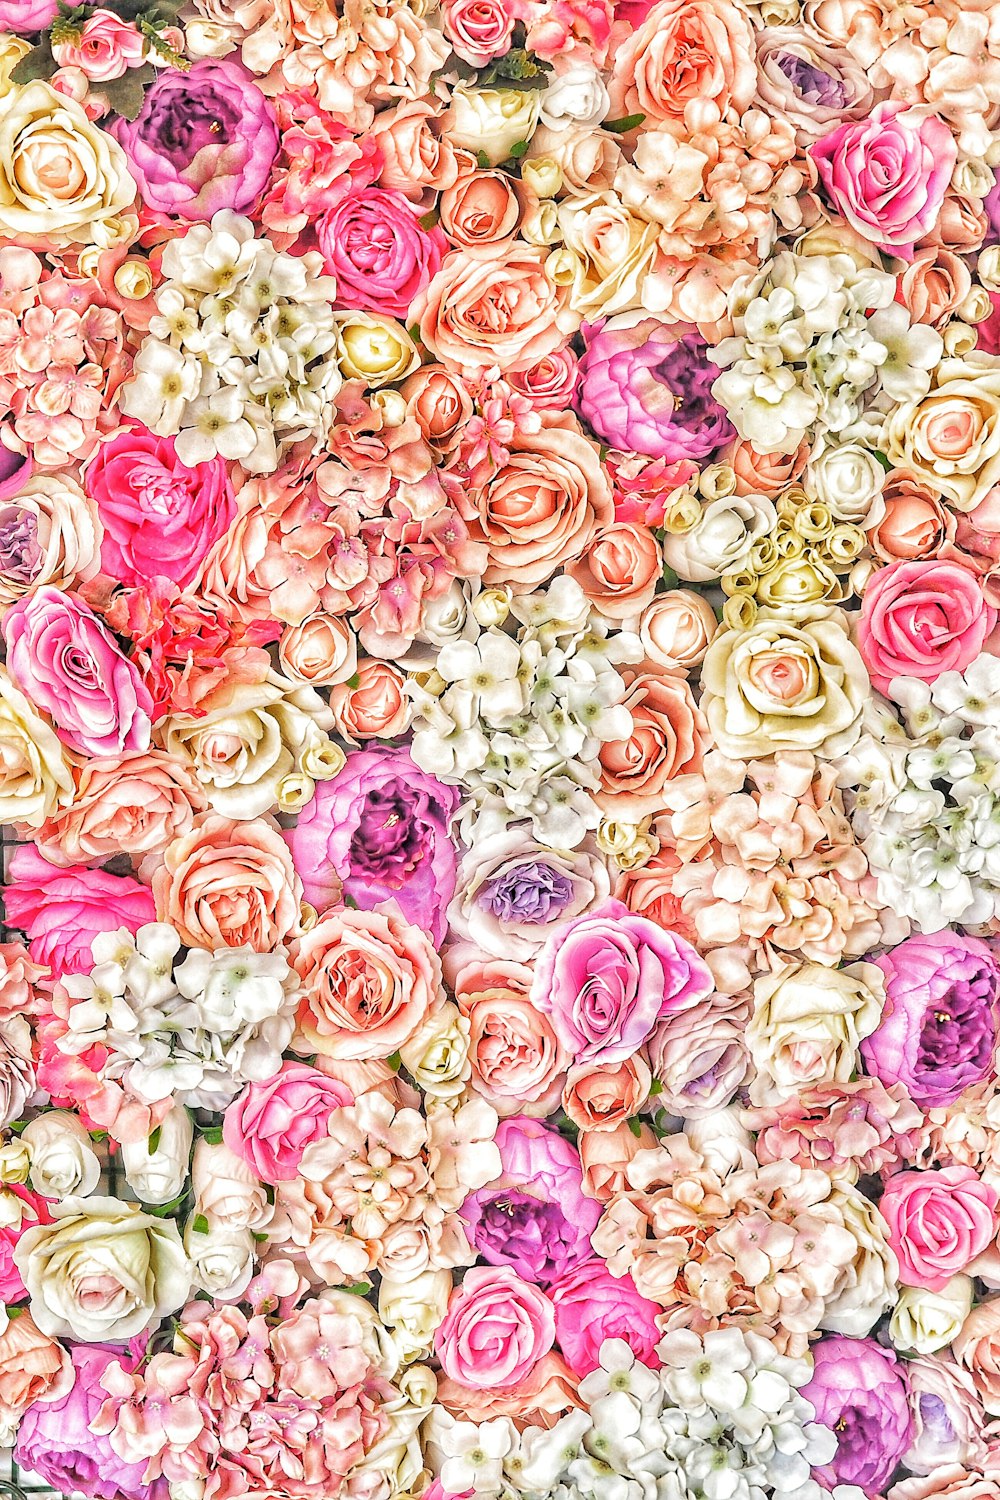 1K+ Floral Pattern Pictures  Download Free Images on Unsplash